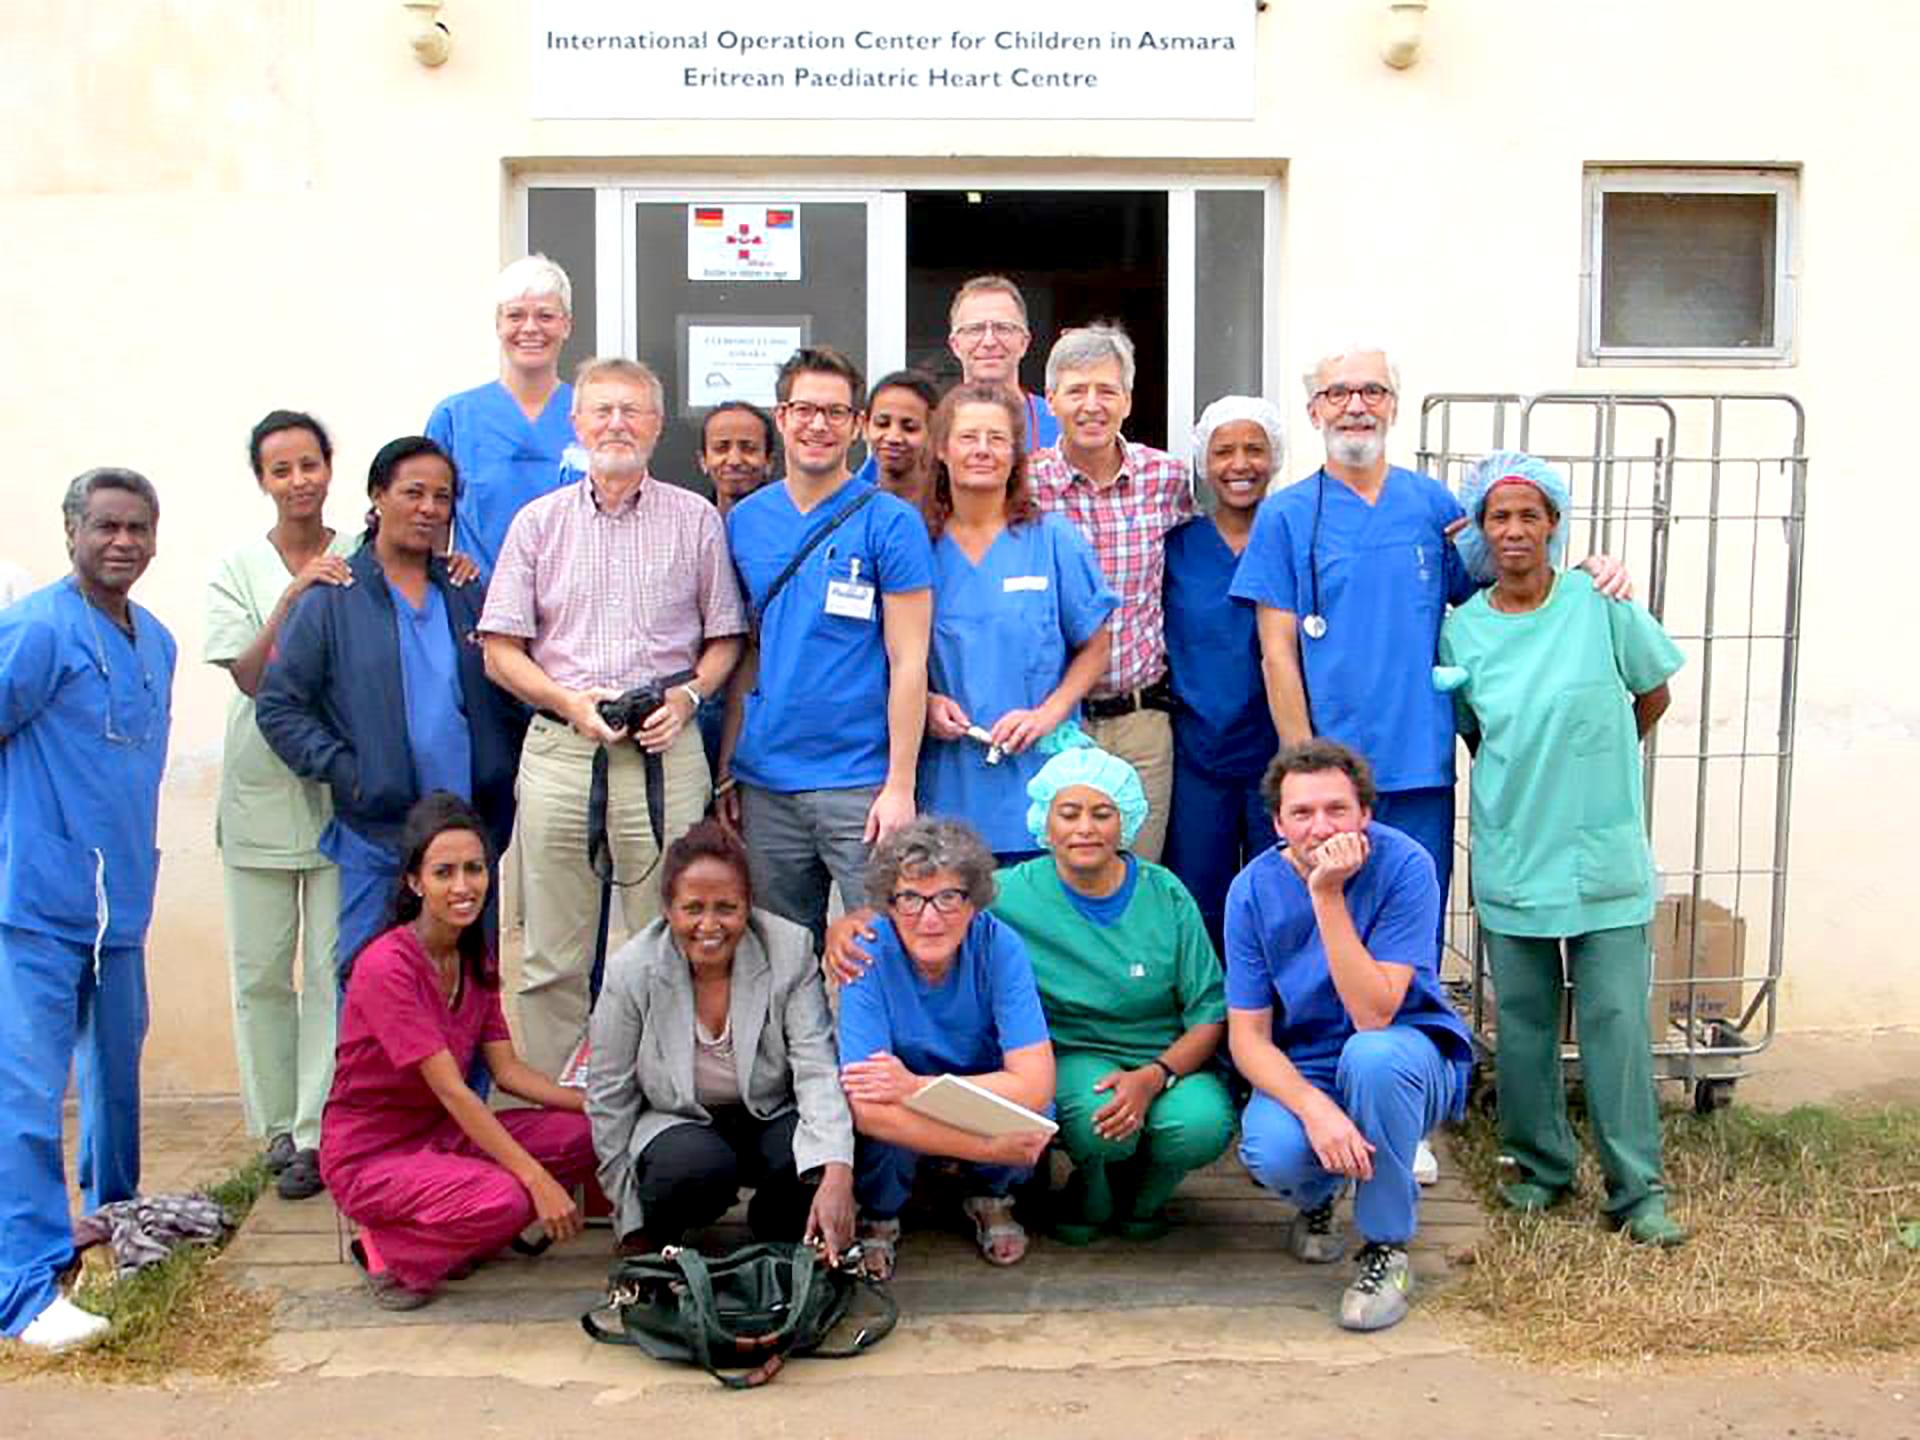 Det danske team under deres første mission i Eritrea, hvor de var der sammen med kolleger fra Bremen. Foto: Søren Walther-Larsen